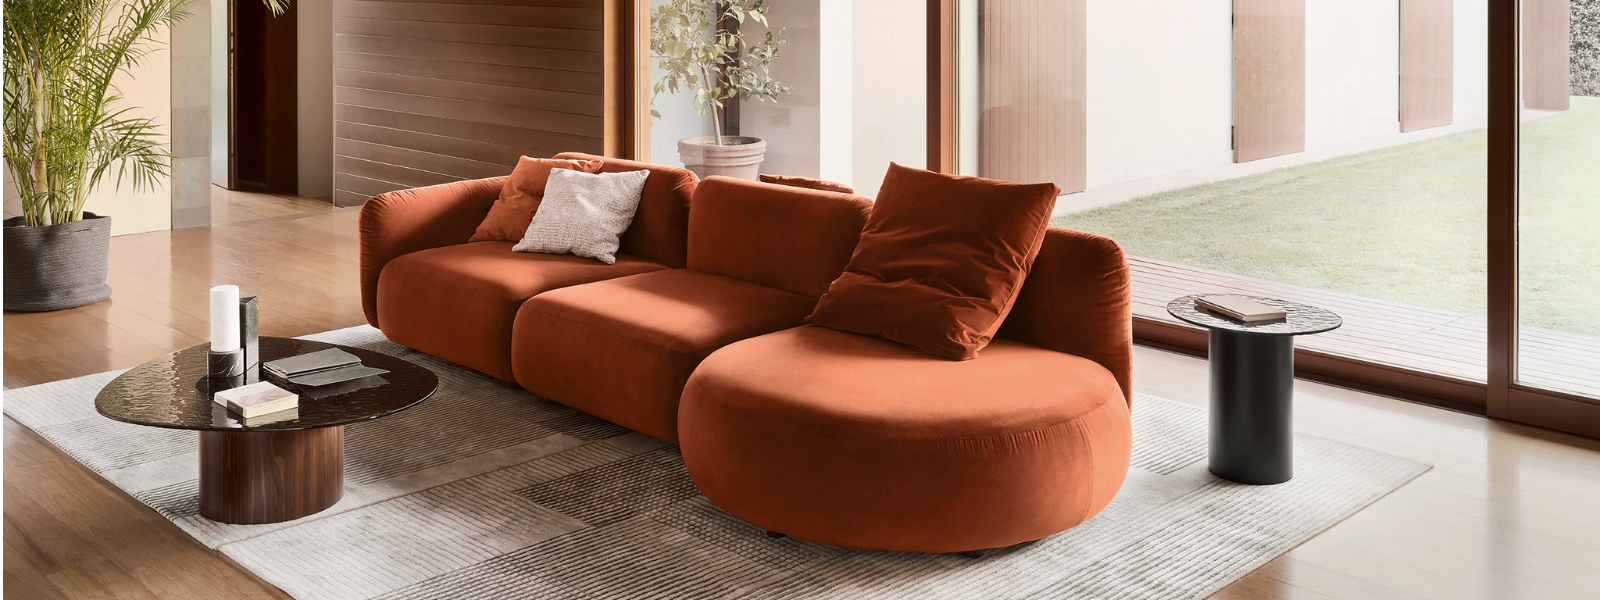 ADERICO OÜ - Tegeleme kvaliteetse mööbli müügi, sisedisaini ning mööbli paigaldusega, pakkudes täislahendusi luksu...